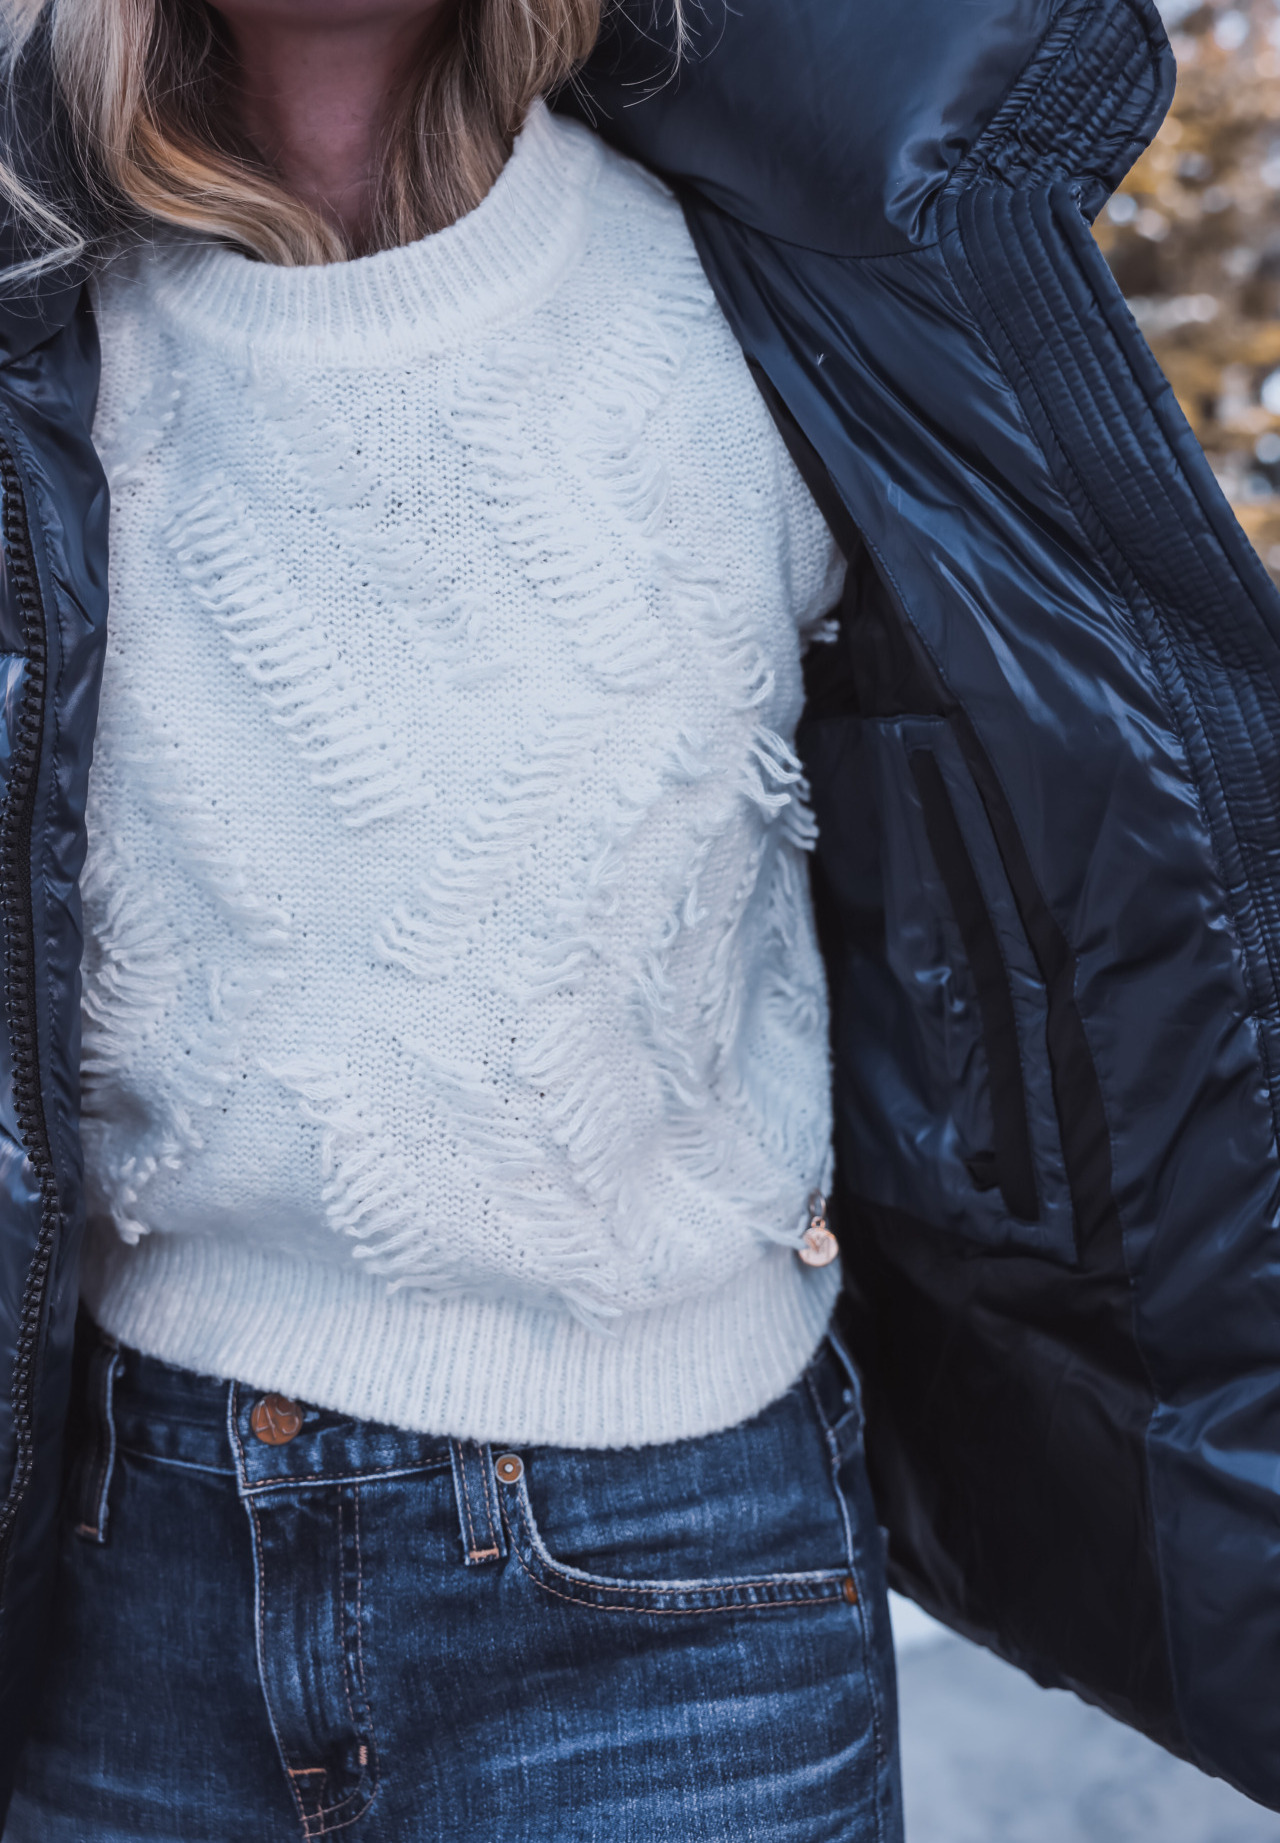 White Fringe Sweater